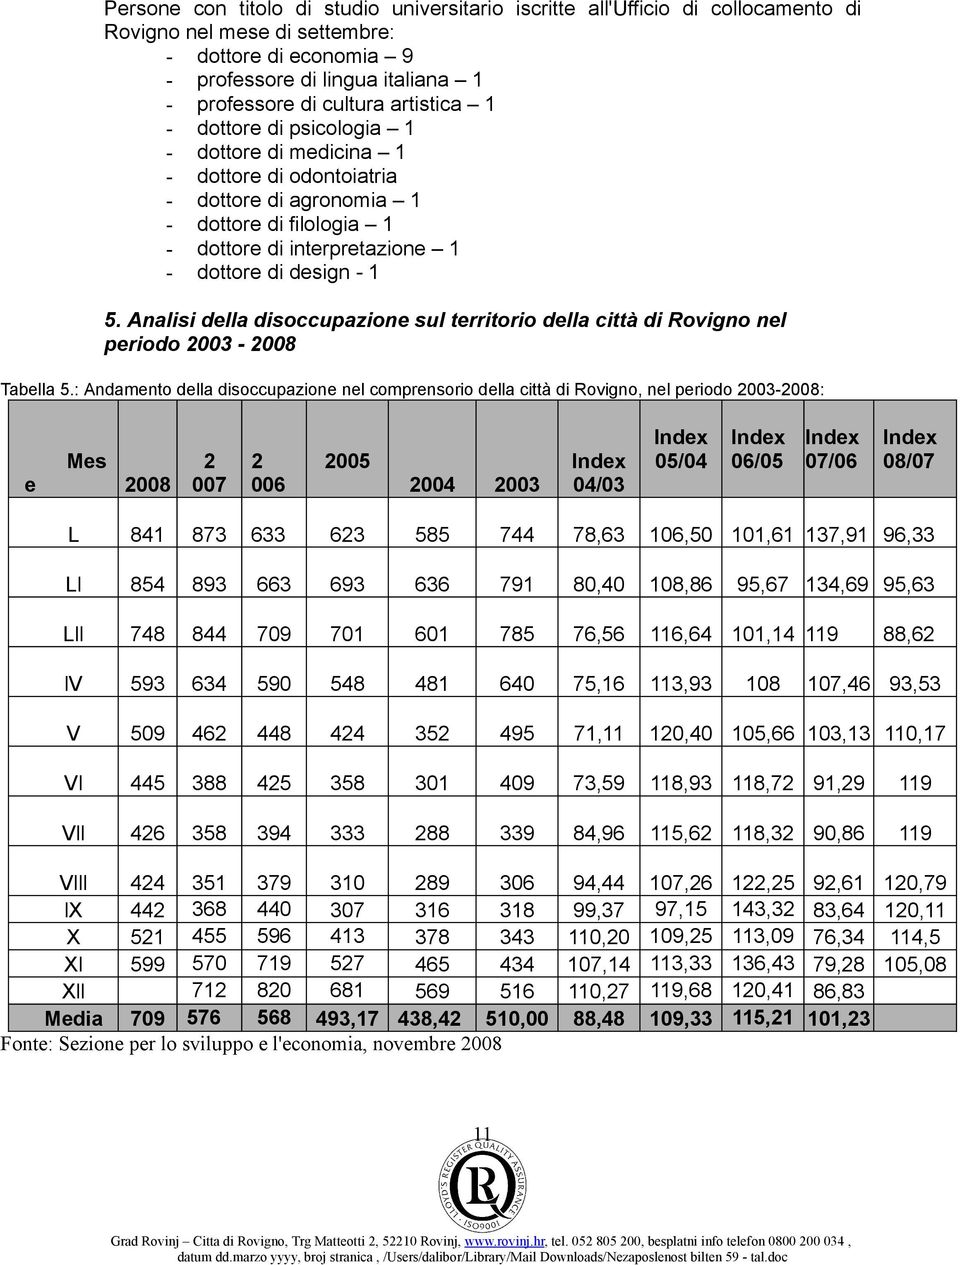 Analisi della disoccupazione sul territorio della città di Rovigno nel periodo 2003-2008 Tabella 5.